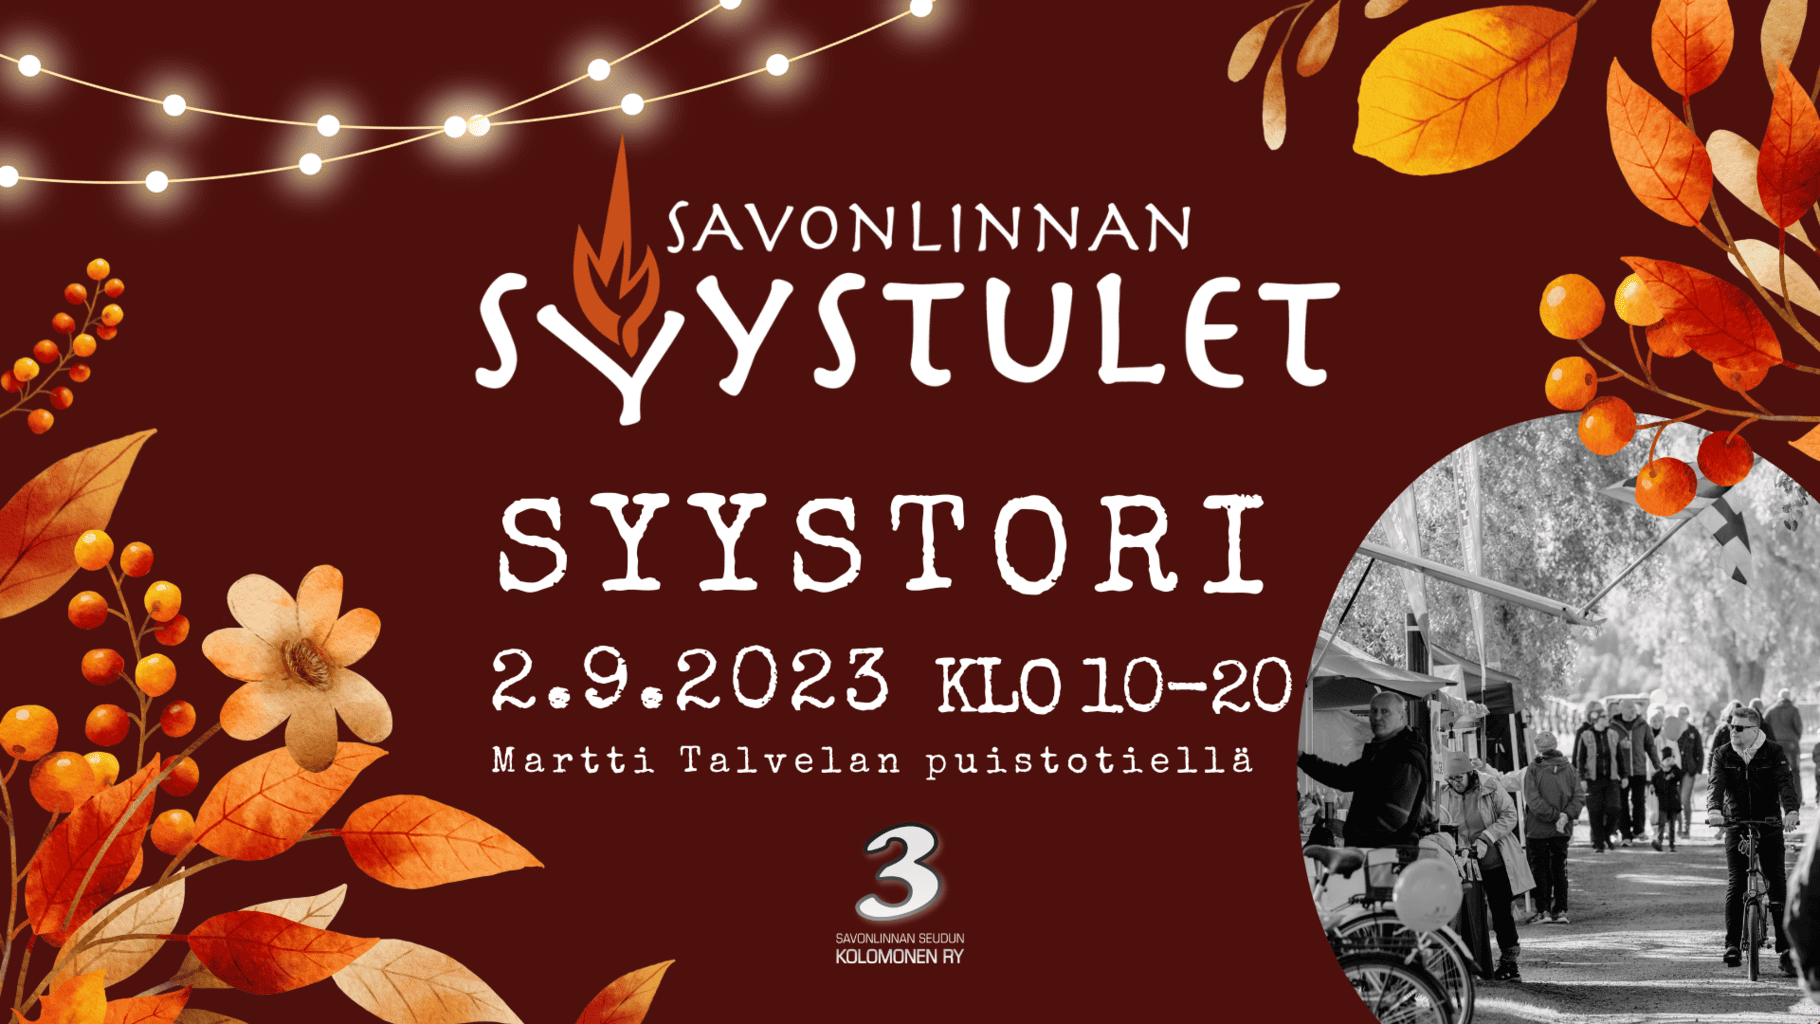 Syystori (1920 x 1080 px) (1)